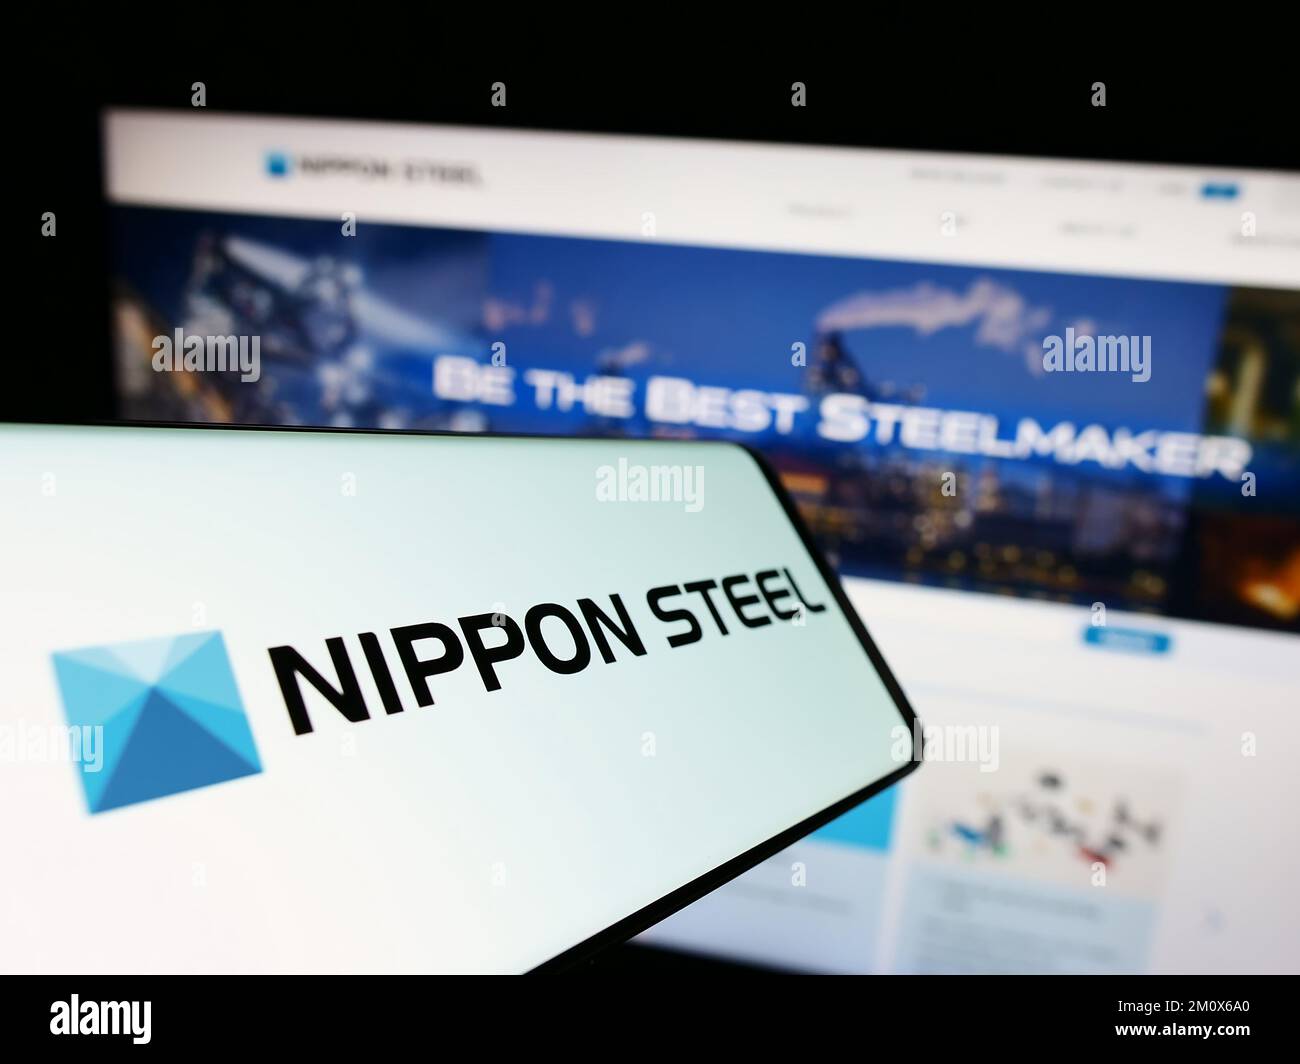 Telefono cellulare con il logo della società giapponese Nippon Steel Corporation sullo schermo di fronte al sito web aziendale. Messa a fuoco al centro del display del telefono. Foto Stock